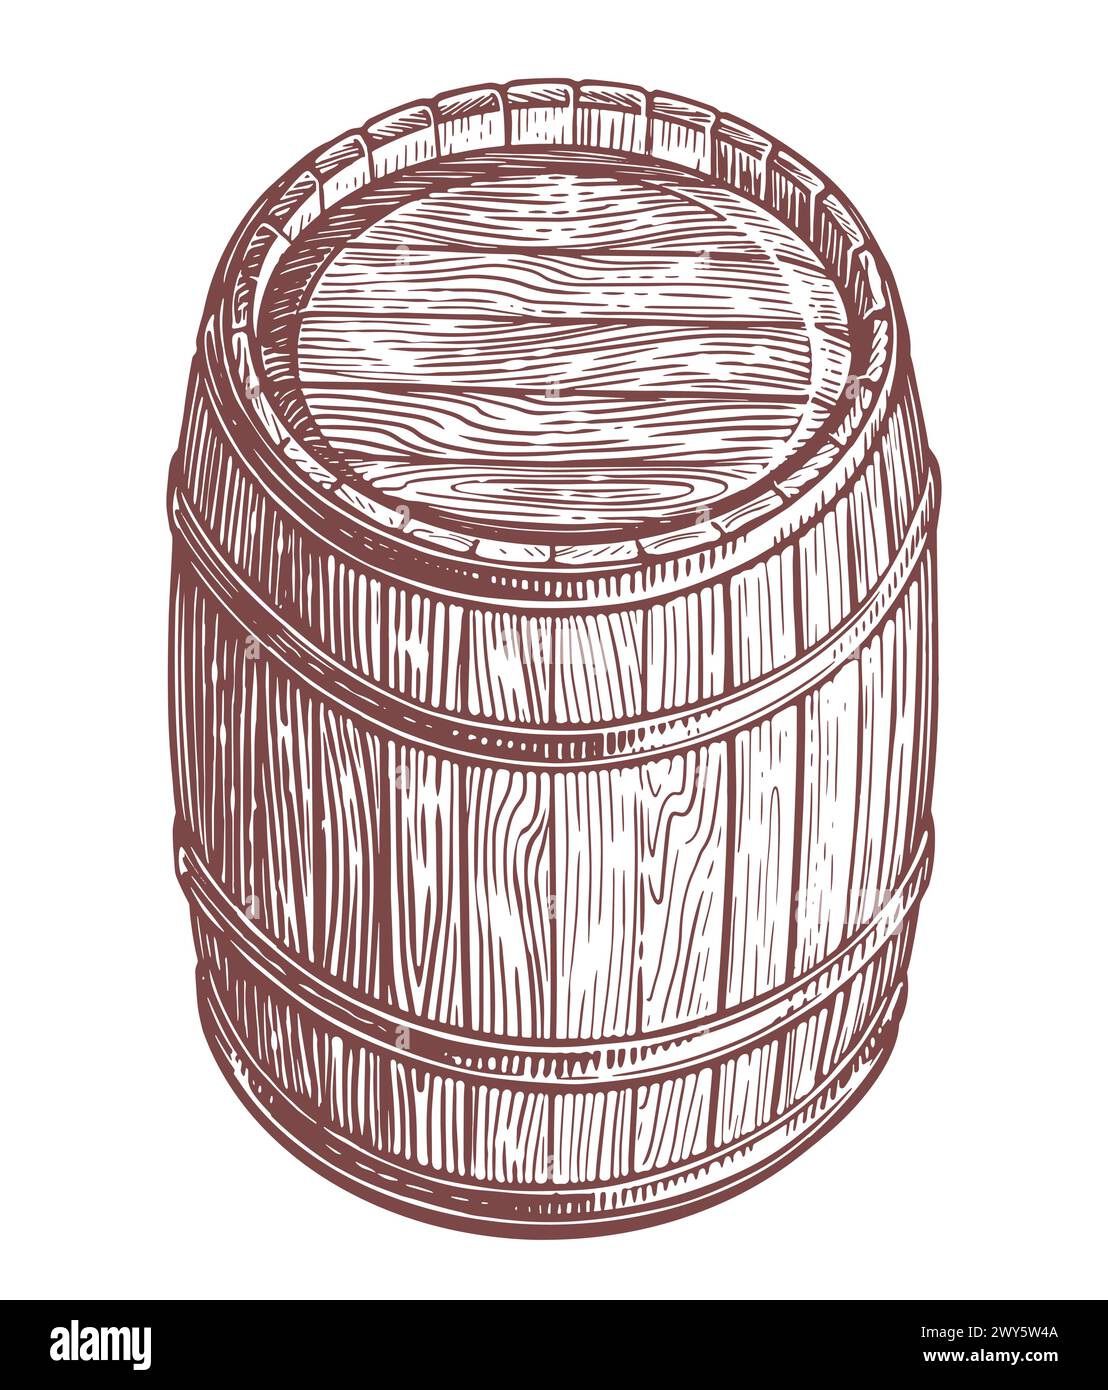 Dibujo a mano barril de madera en fondo blanco. Cask keg sketch ilustración vectorial vintage Ilustración del Vector